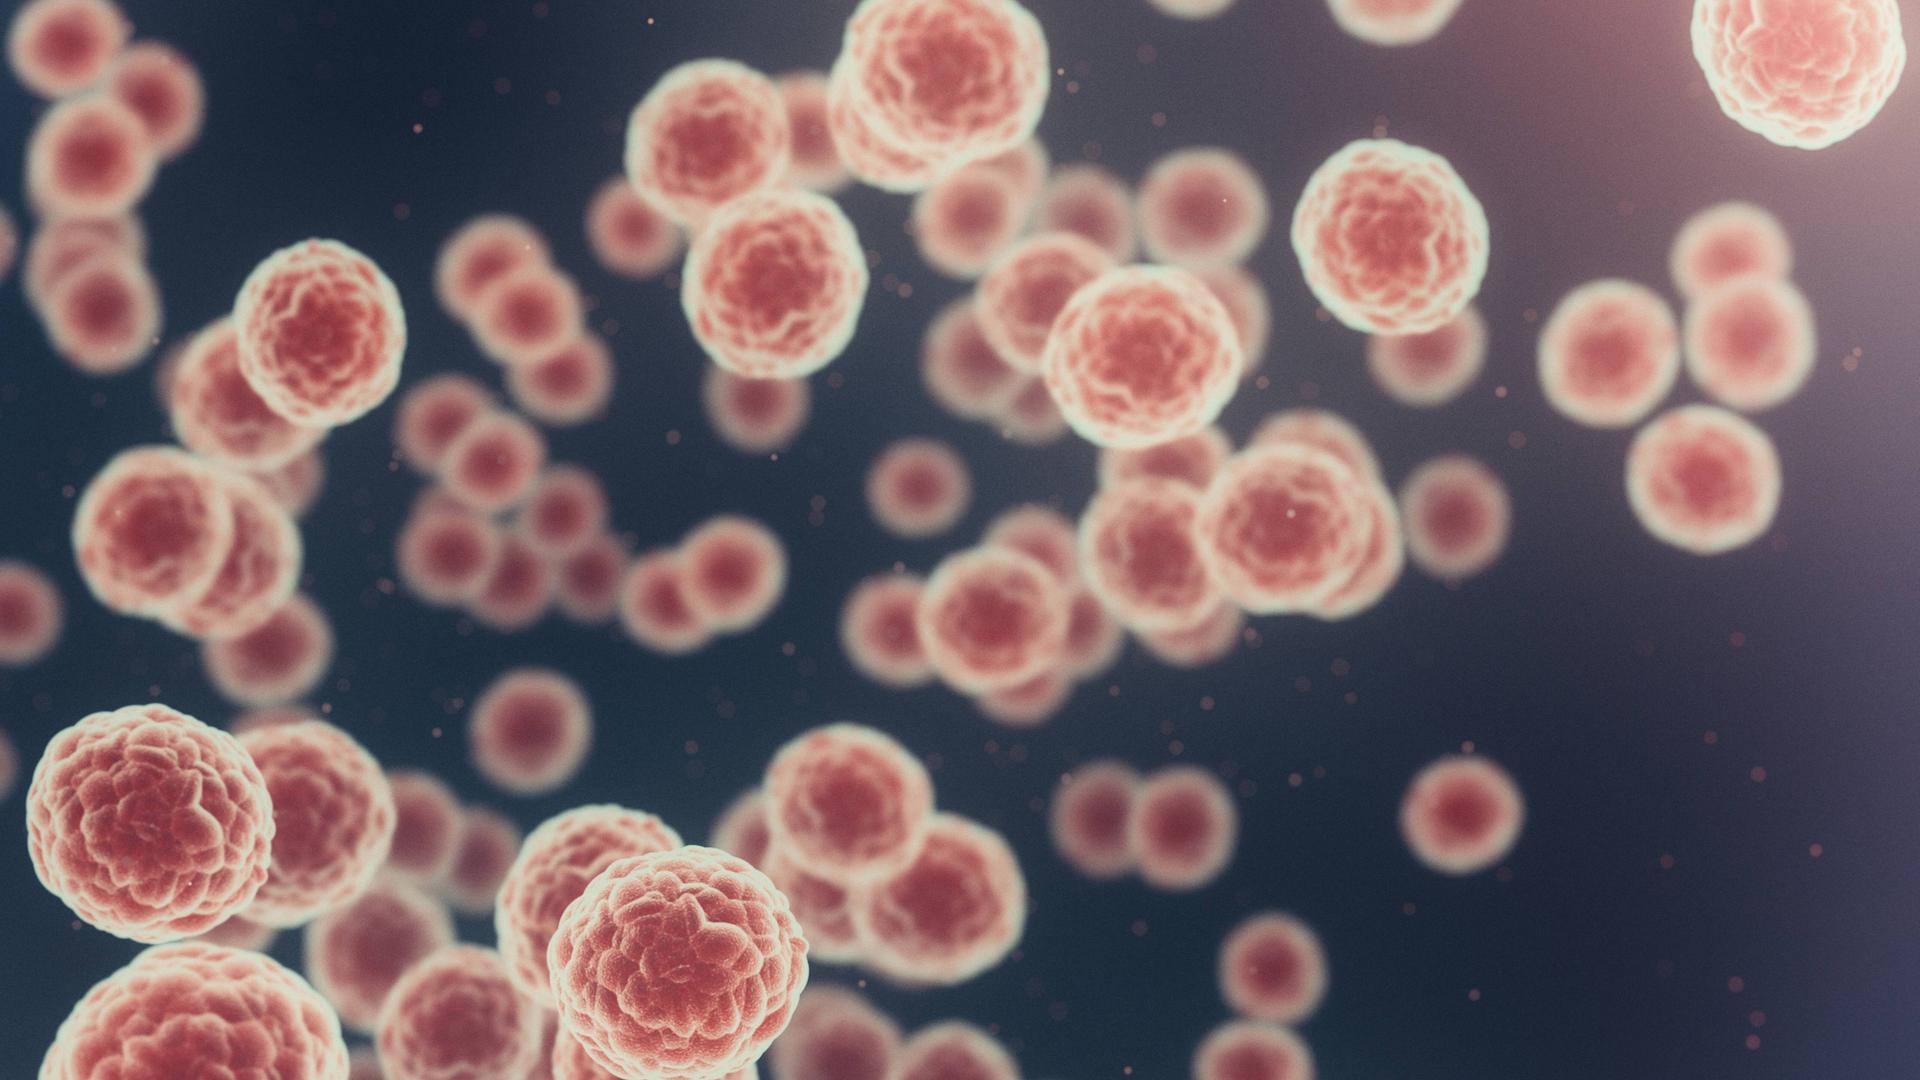 Mikroskopische Ansicht von rosafarbenen Viren auf blauem Hintergrund